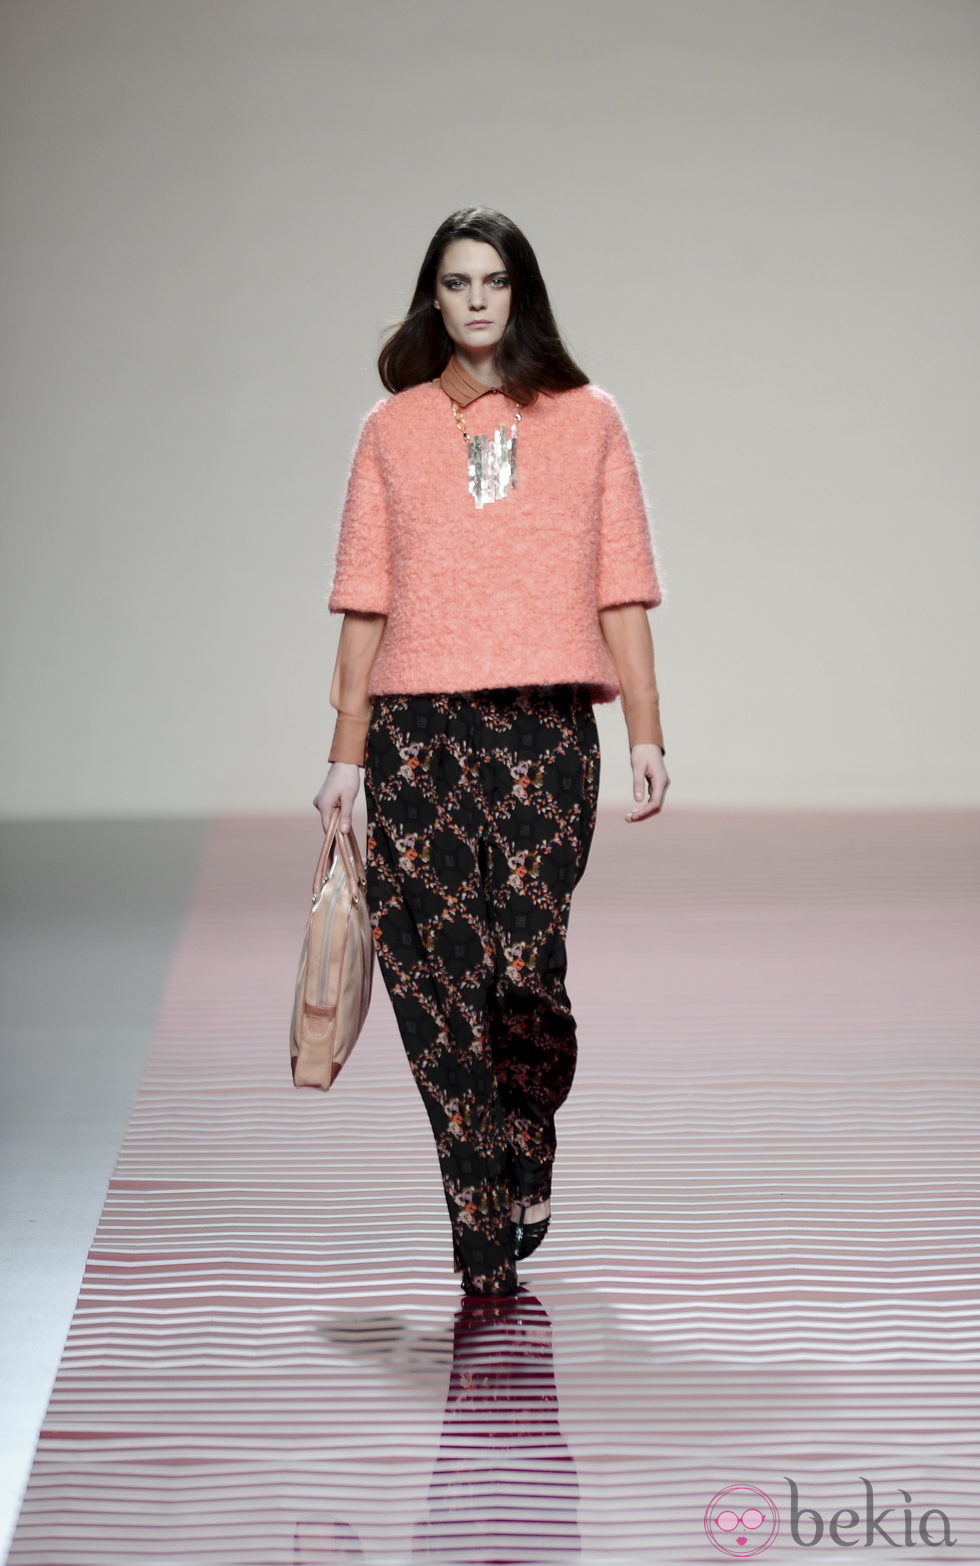 Pantalón con flores invernales de la colección otoño/invierno 2013/2014 de Ailanto en Madrid Fashion Week